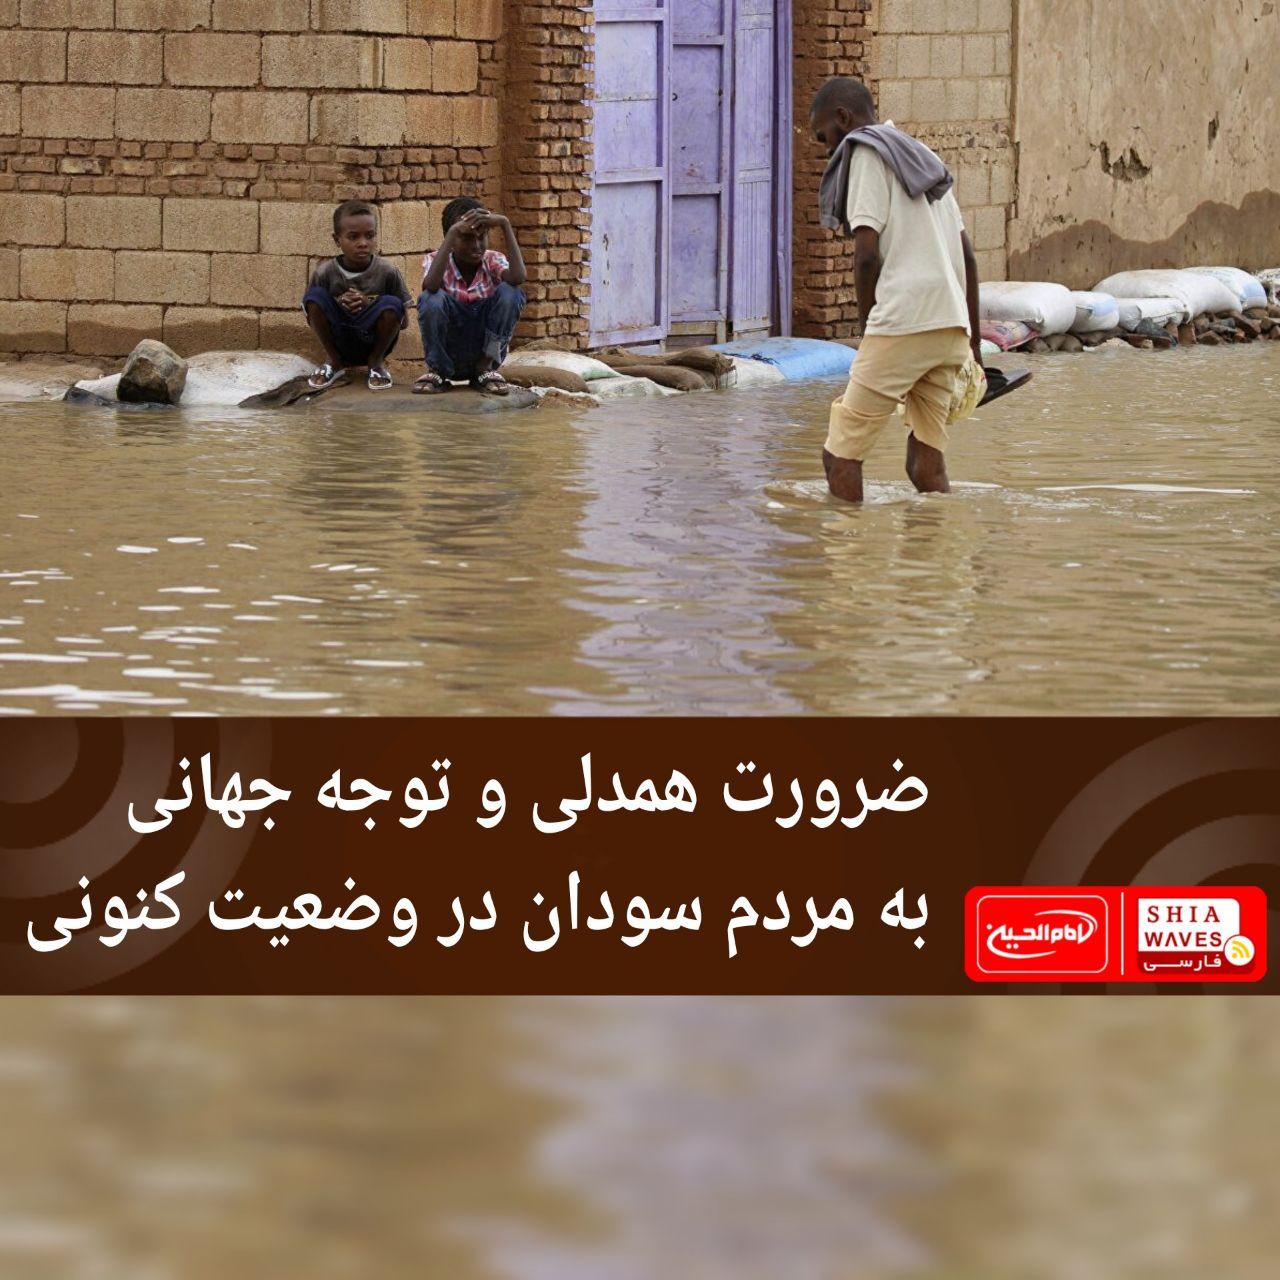 تصویر ضرورت همدلی و توجه جهانی به مردم سودان در وضعیت کنونی